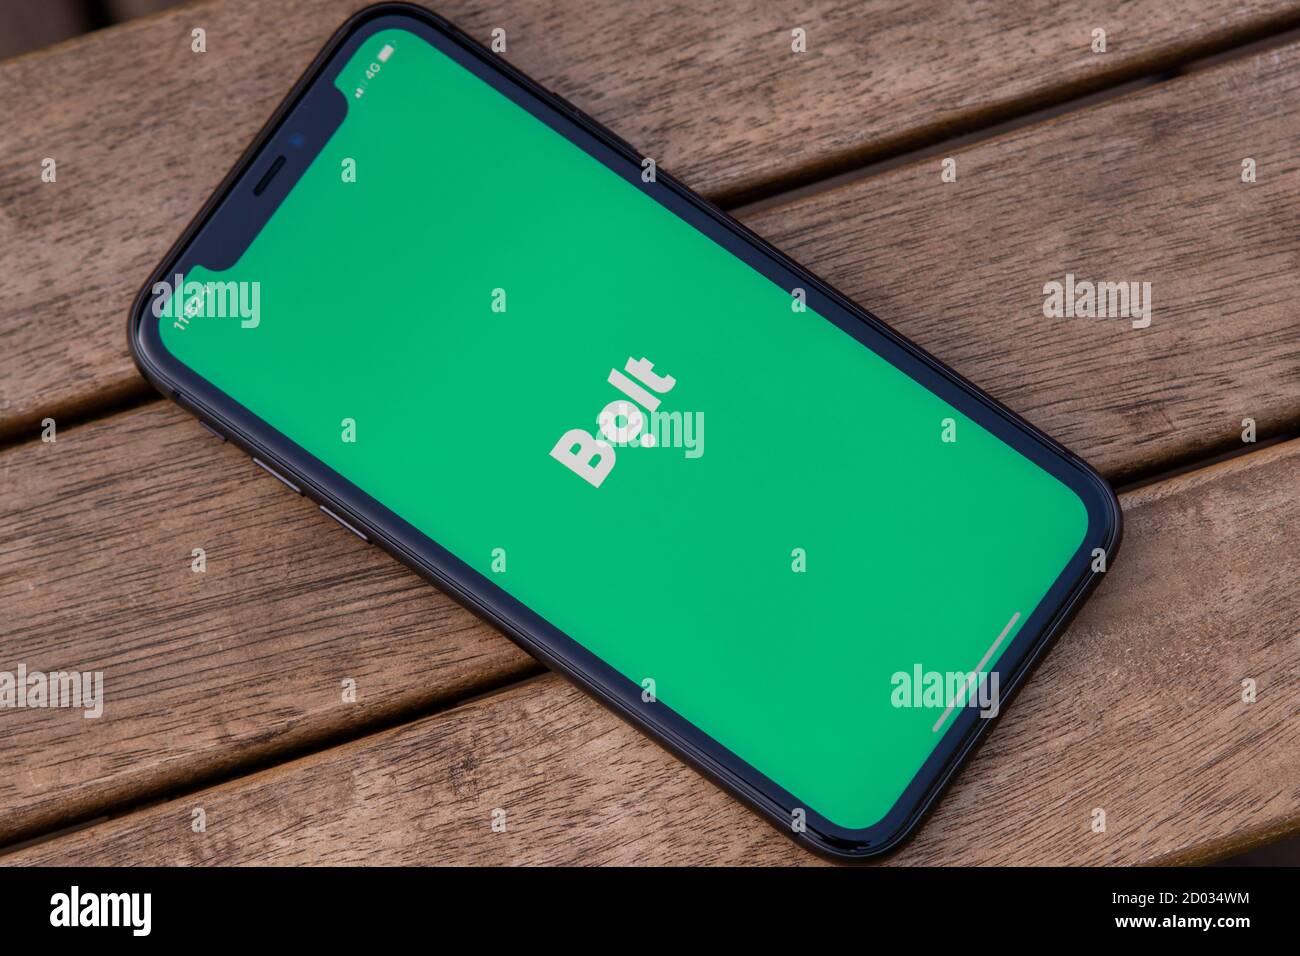 Tallinn / Estland - 28. September 2020: Schwarzes iphone mit Logo der Bolt-Anwendung auf dem Bildschirm. Holzhintergrund. Kann als Veranschaulichung für m verwendet werden Stockfoto